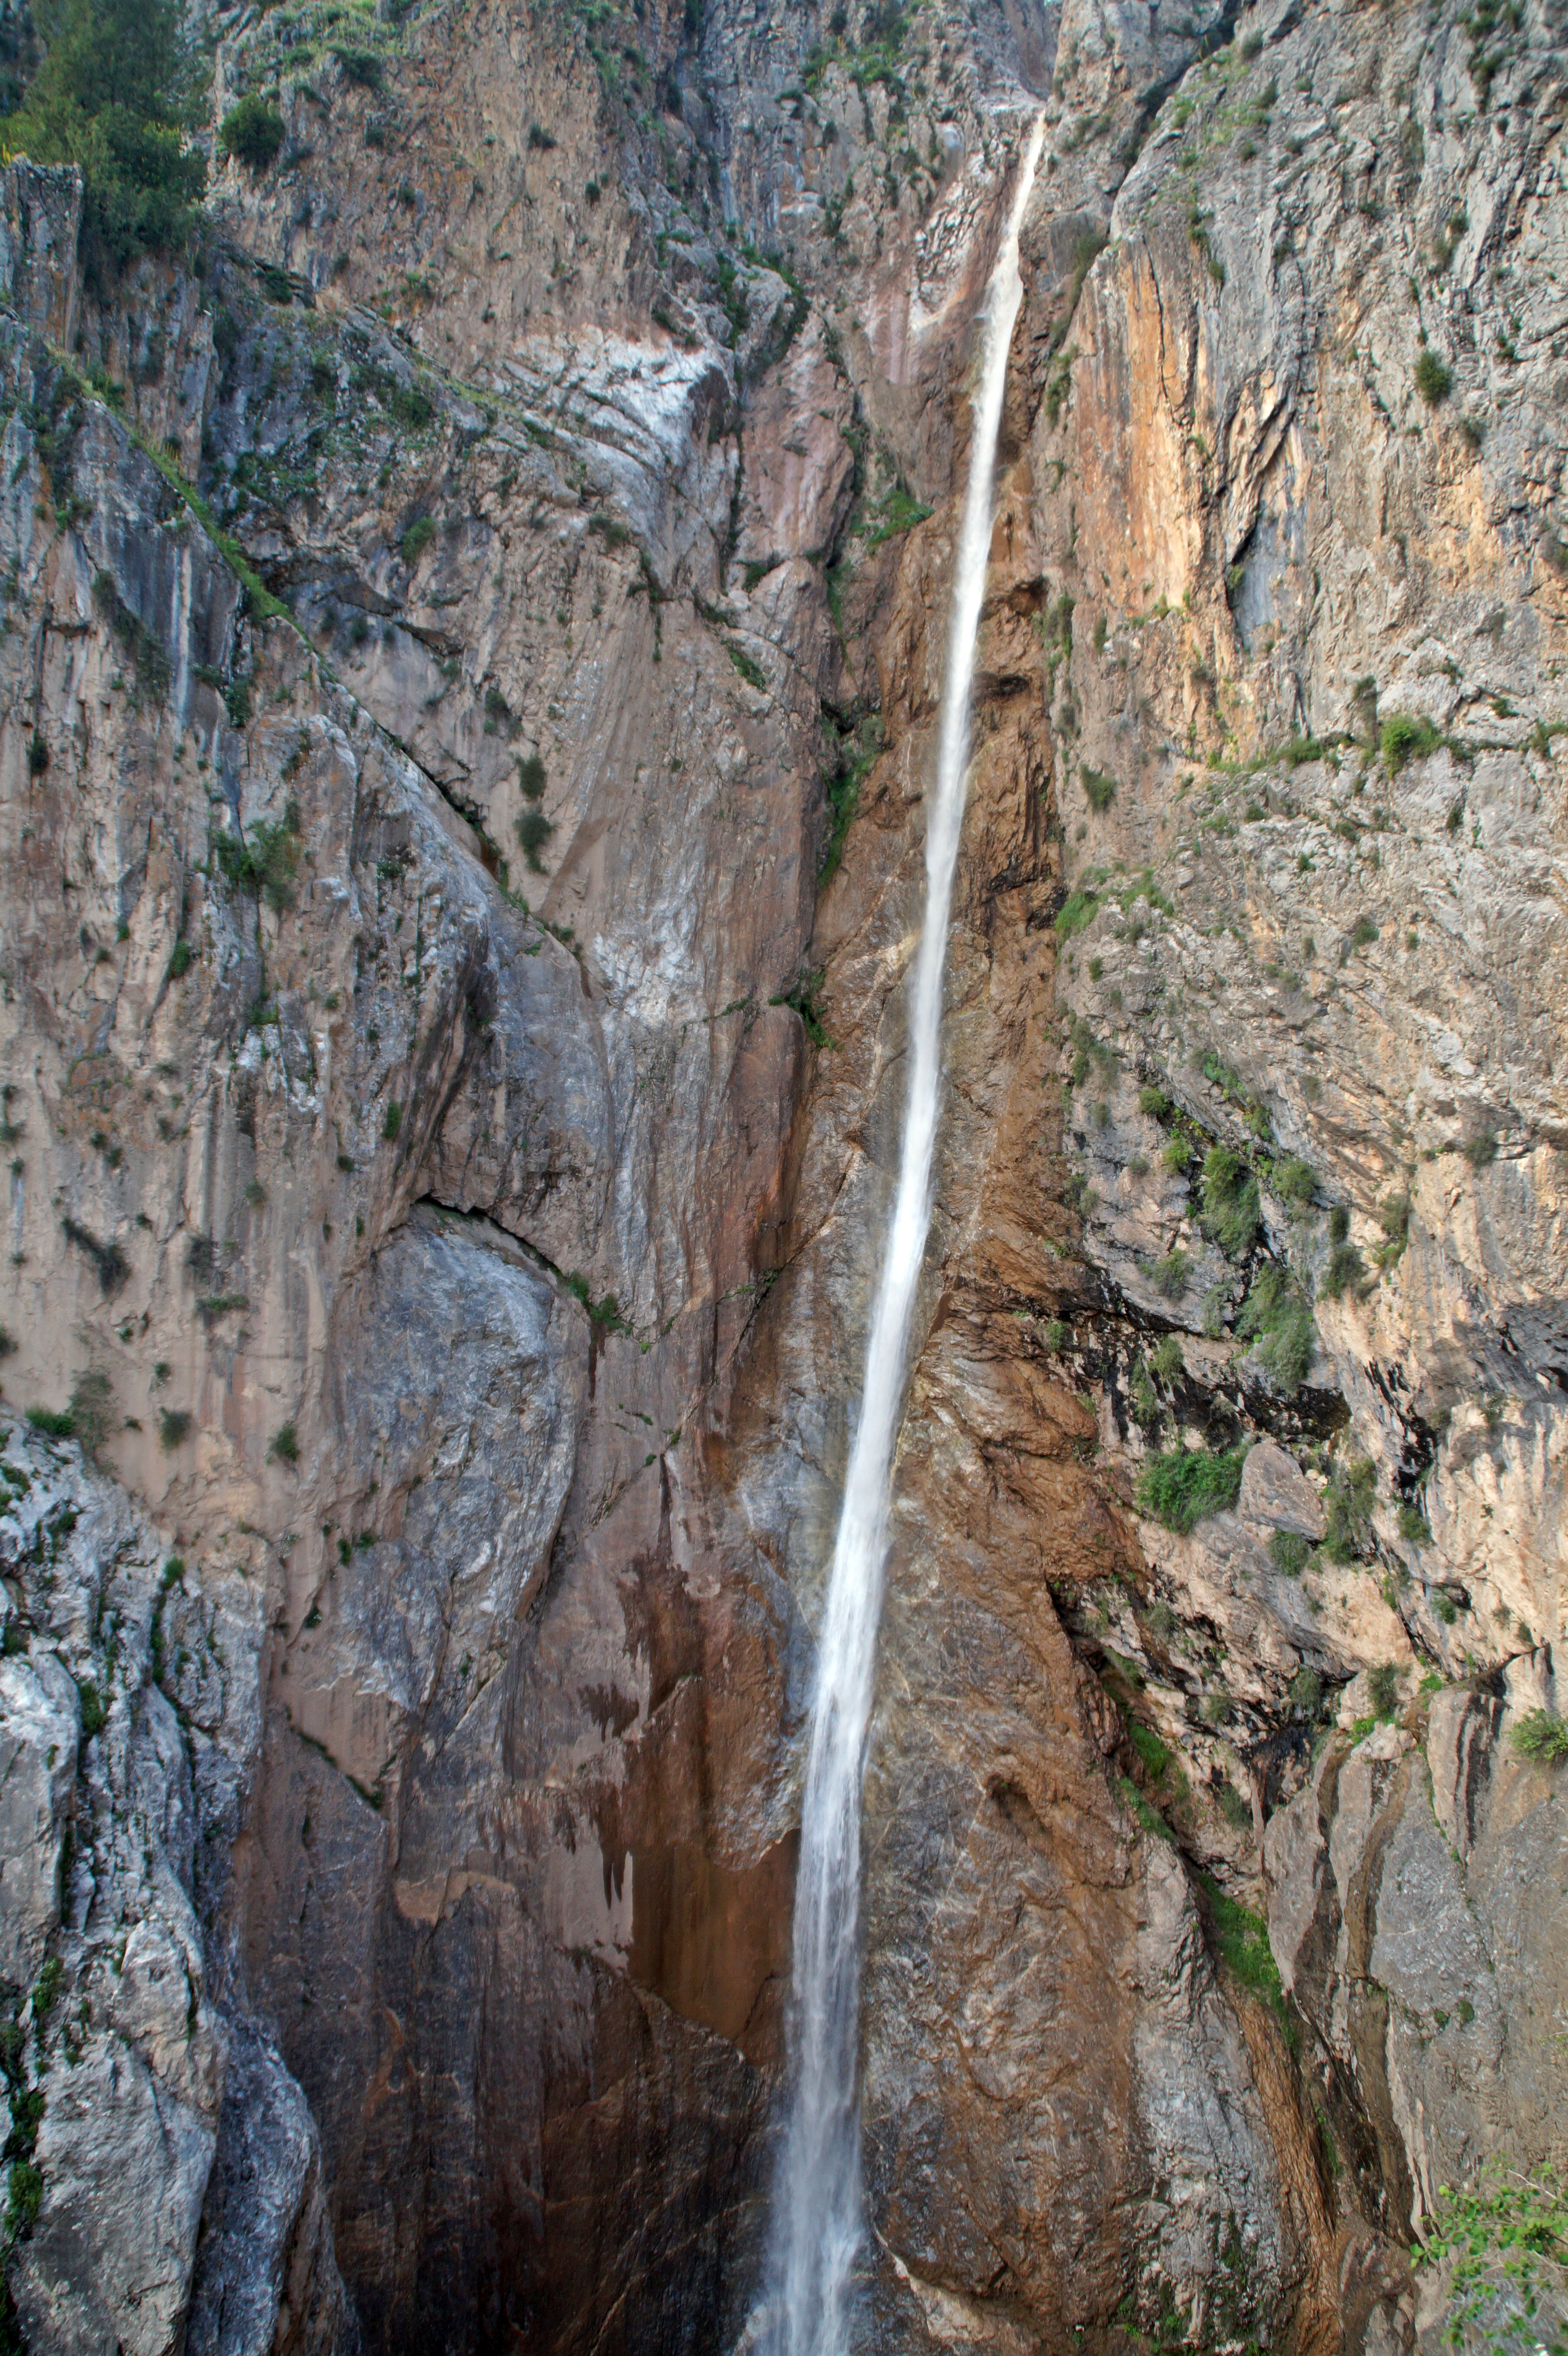 The Big Waterfall